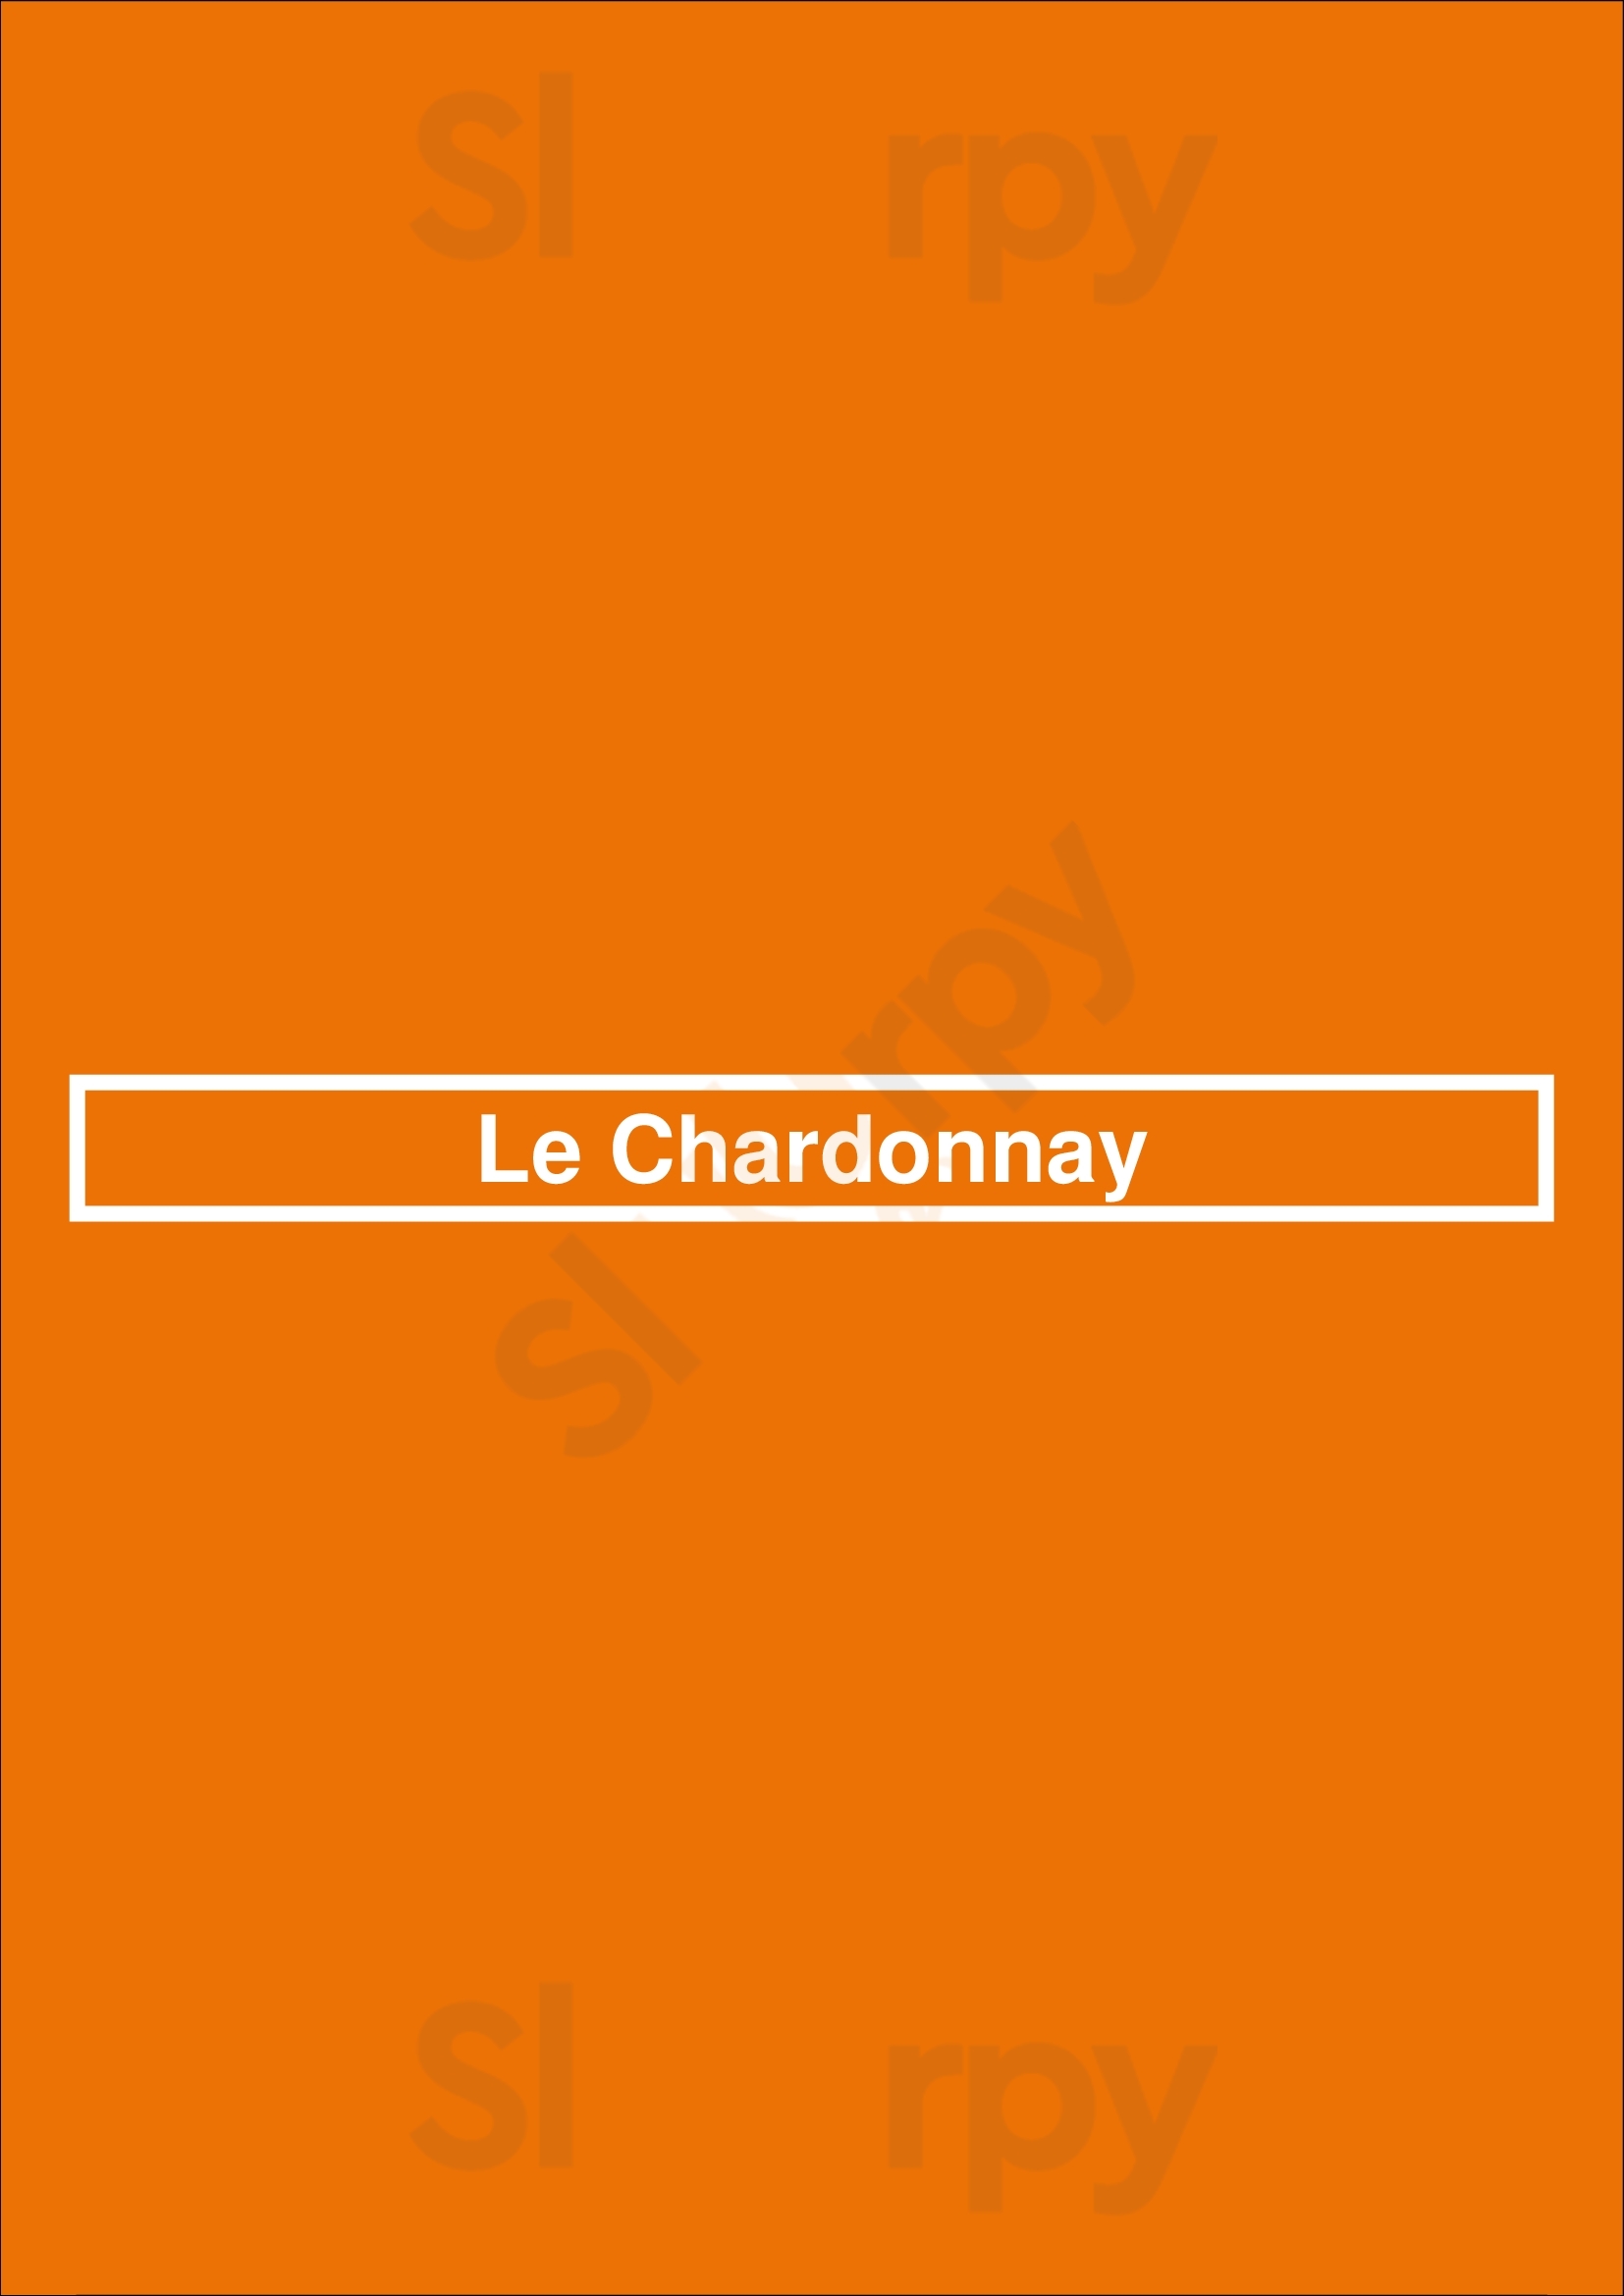 Le Chardonnay Knokke Menu - 1